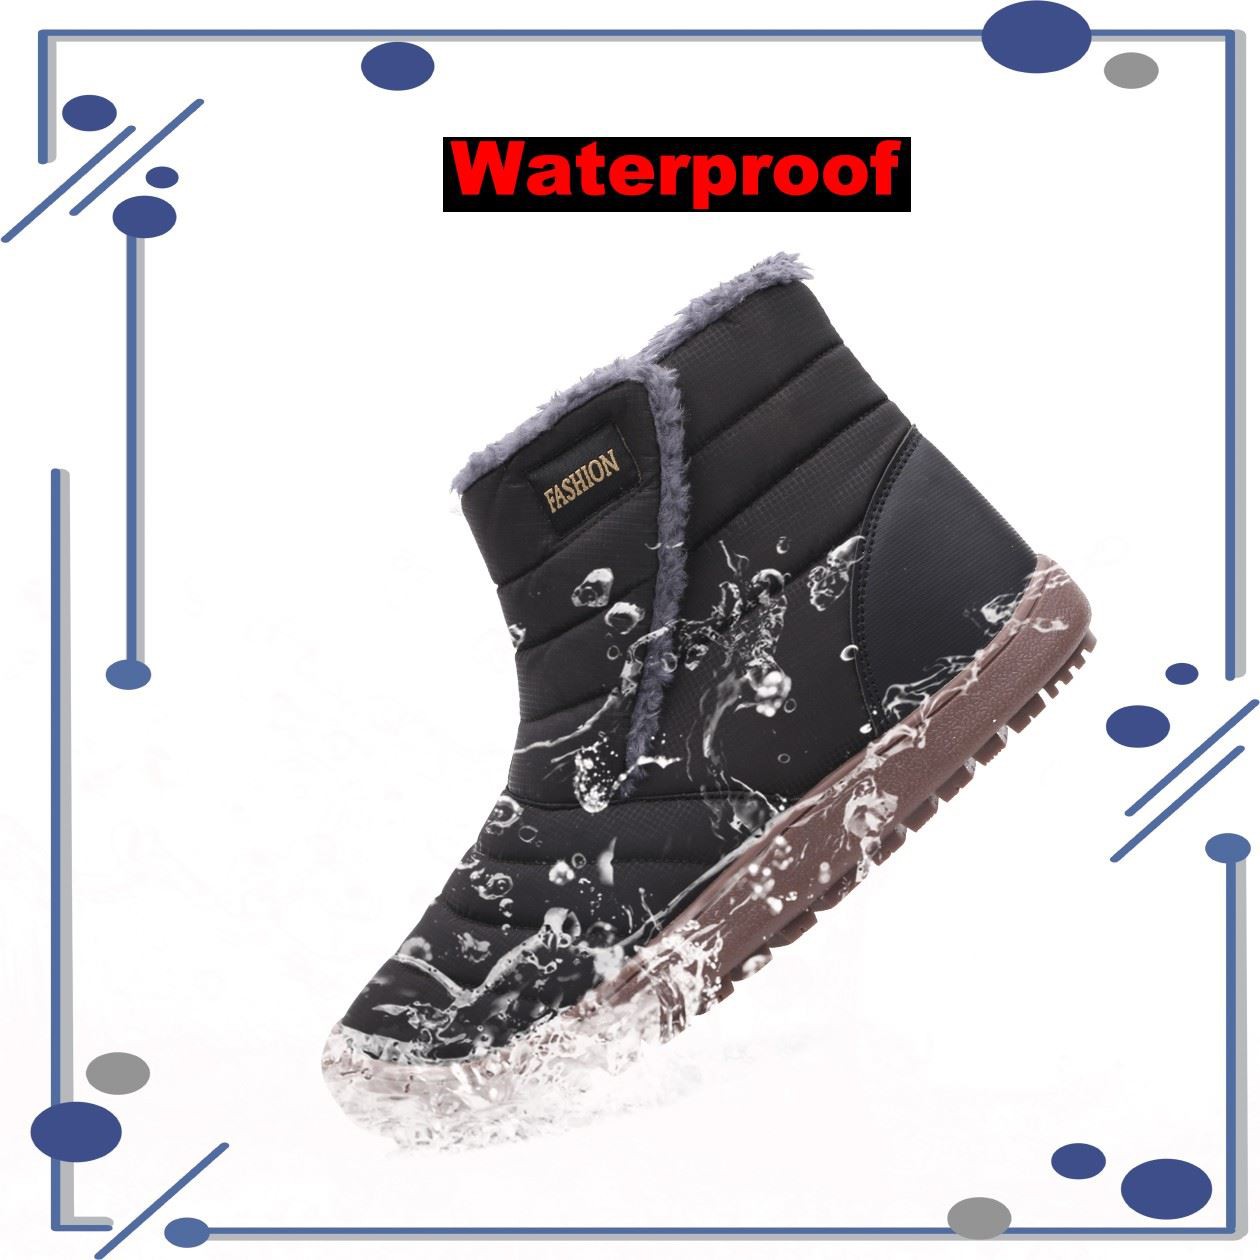 ART 1925 waterproof boots in wintter (11).jpg